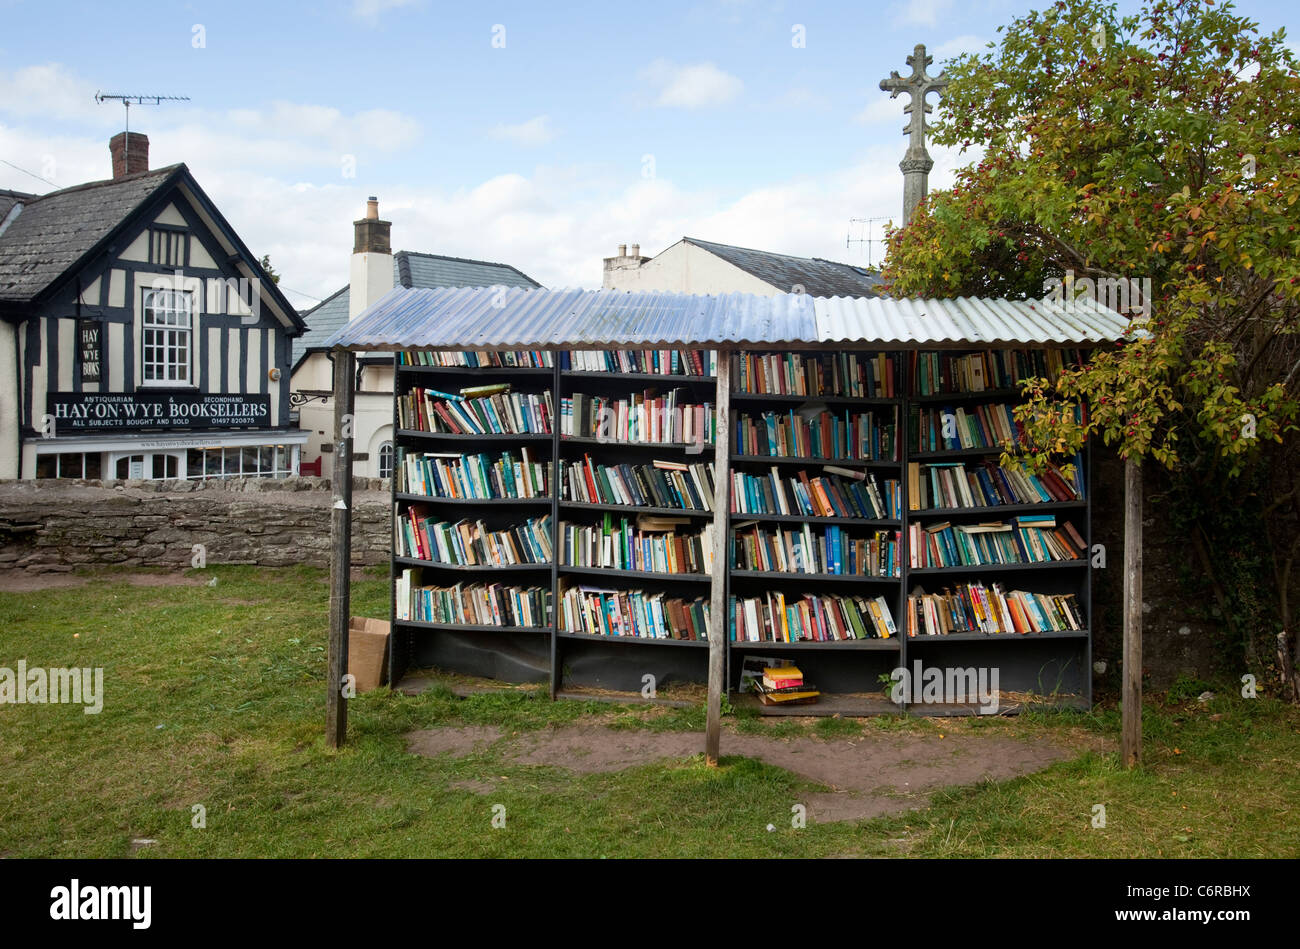 Una onestà bookshop nel parco del castello di fieno in Hay-On-Wye, Regno Unito Foto Stock